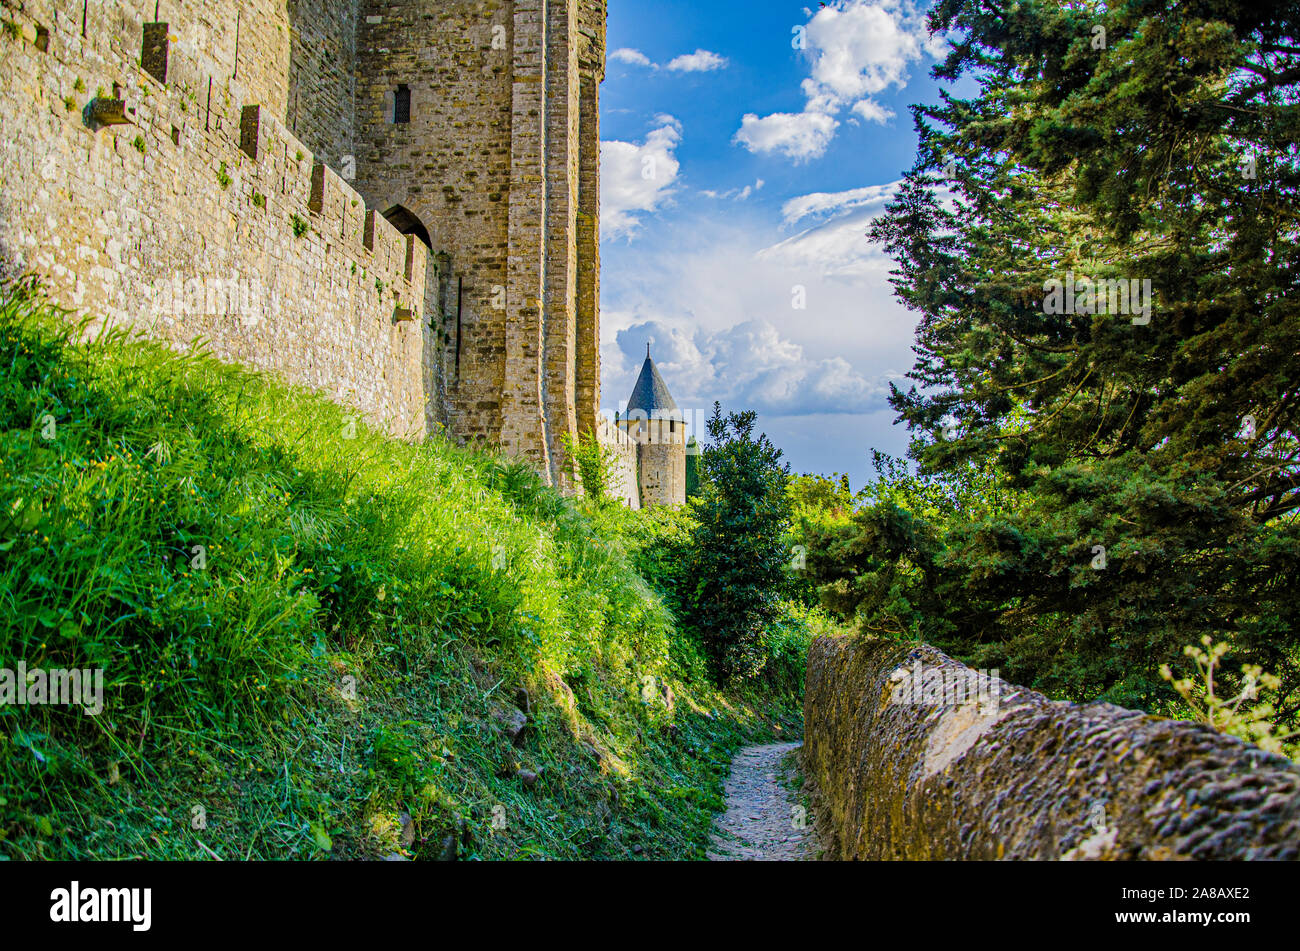 Spaziergang rund um die mittelalterliche Stadt Carcassonne mit den Mauern seiner Burg auf der linken Seite. Frankreich Stockfoto